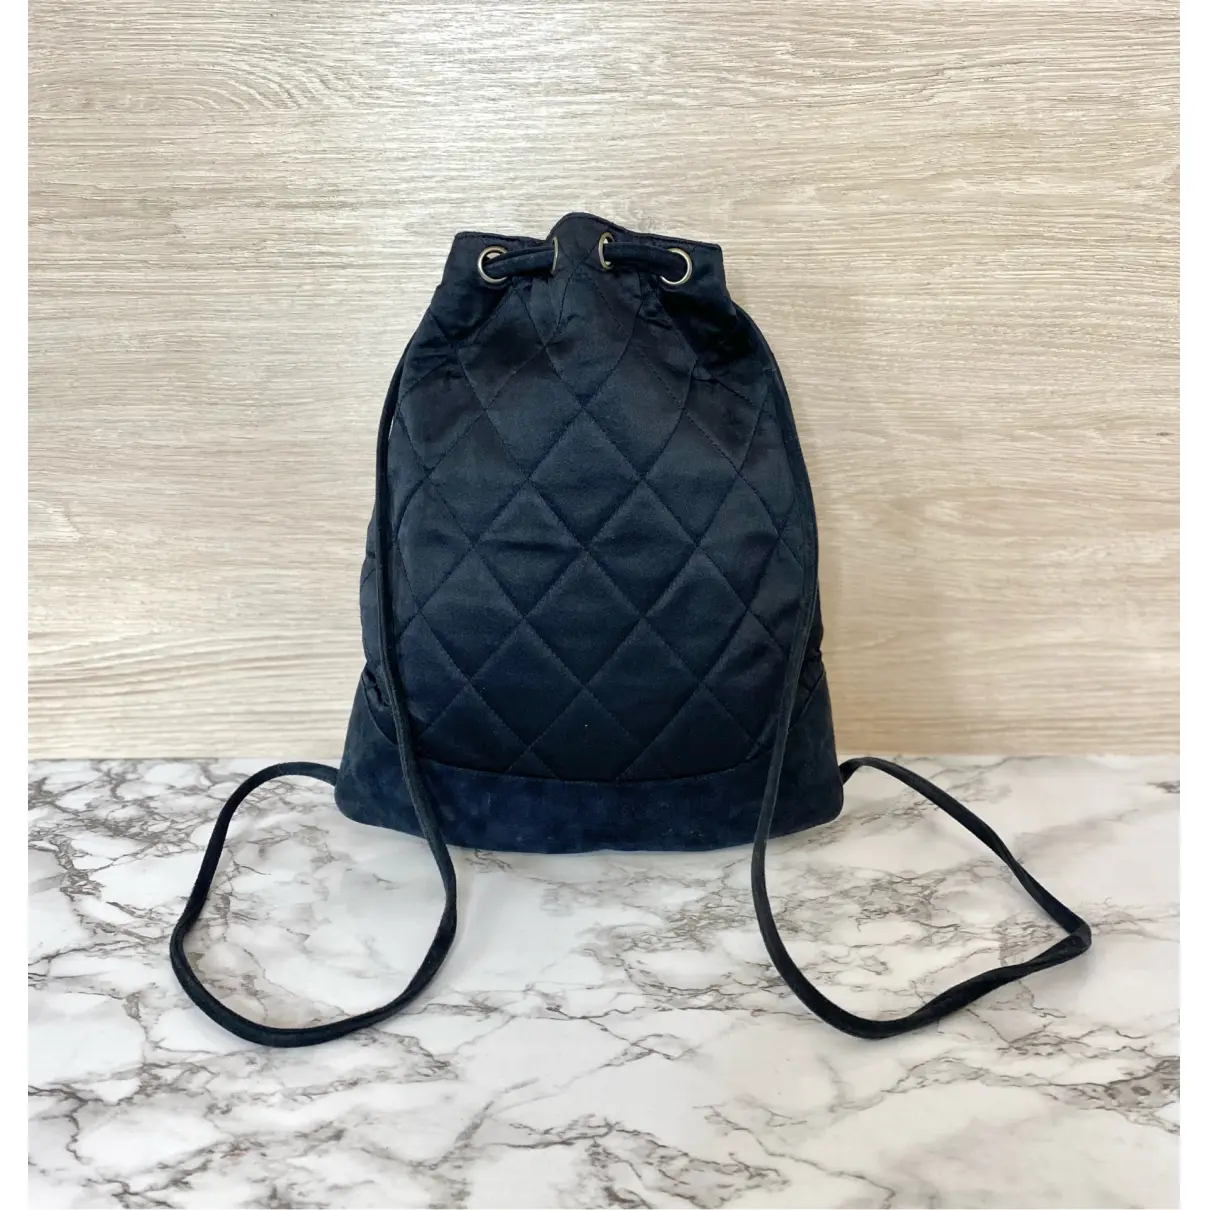 Buy Chanel Silk backpack online - Vintage